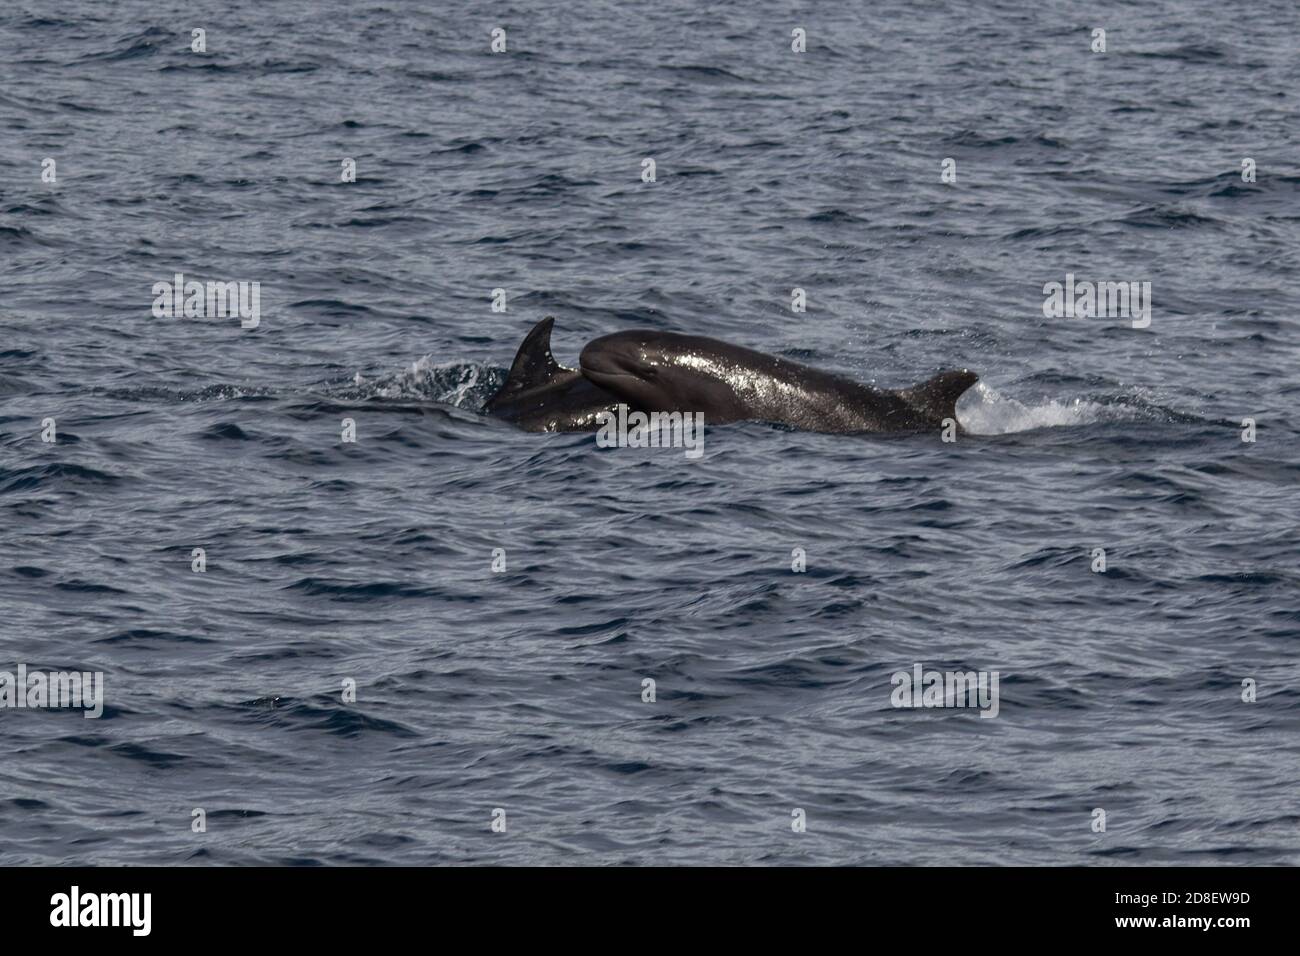 Il Falso Killer Whale (Pseudorca crassidens) è una specie di delfini oceanici. Questi esemplari sono stati fotografati al largo della Nuova Zelanda. Foto Stock